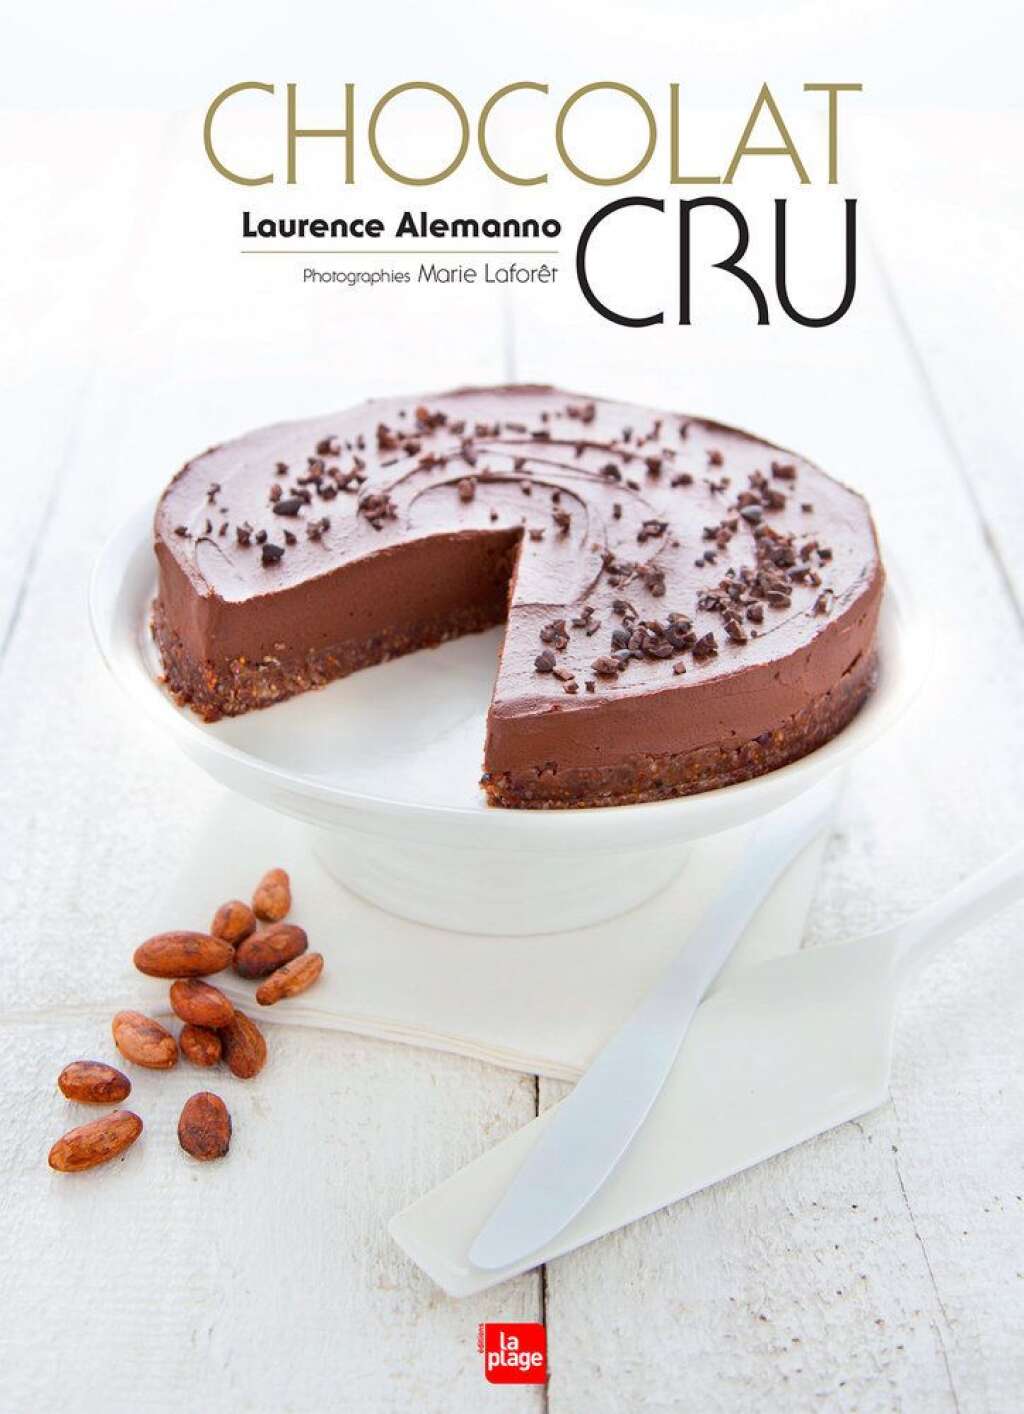 - <em>Toutes les recettes sont issues du livre "Chocolat Cru" de Laurent Alemanno</em> paru aux éditions La Plage